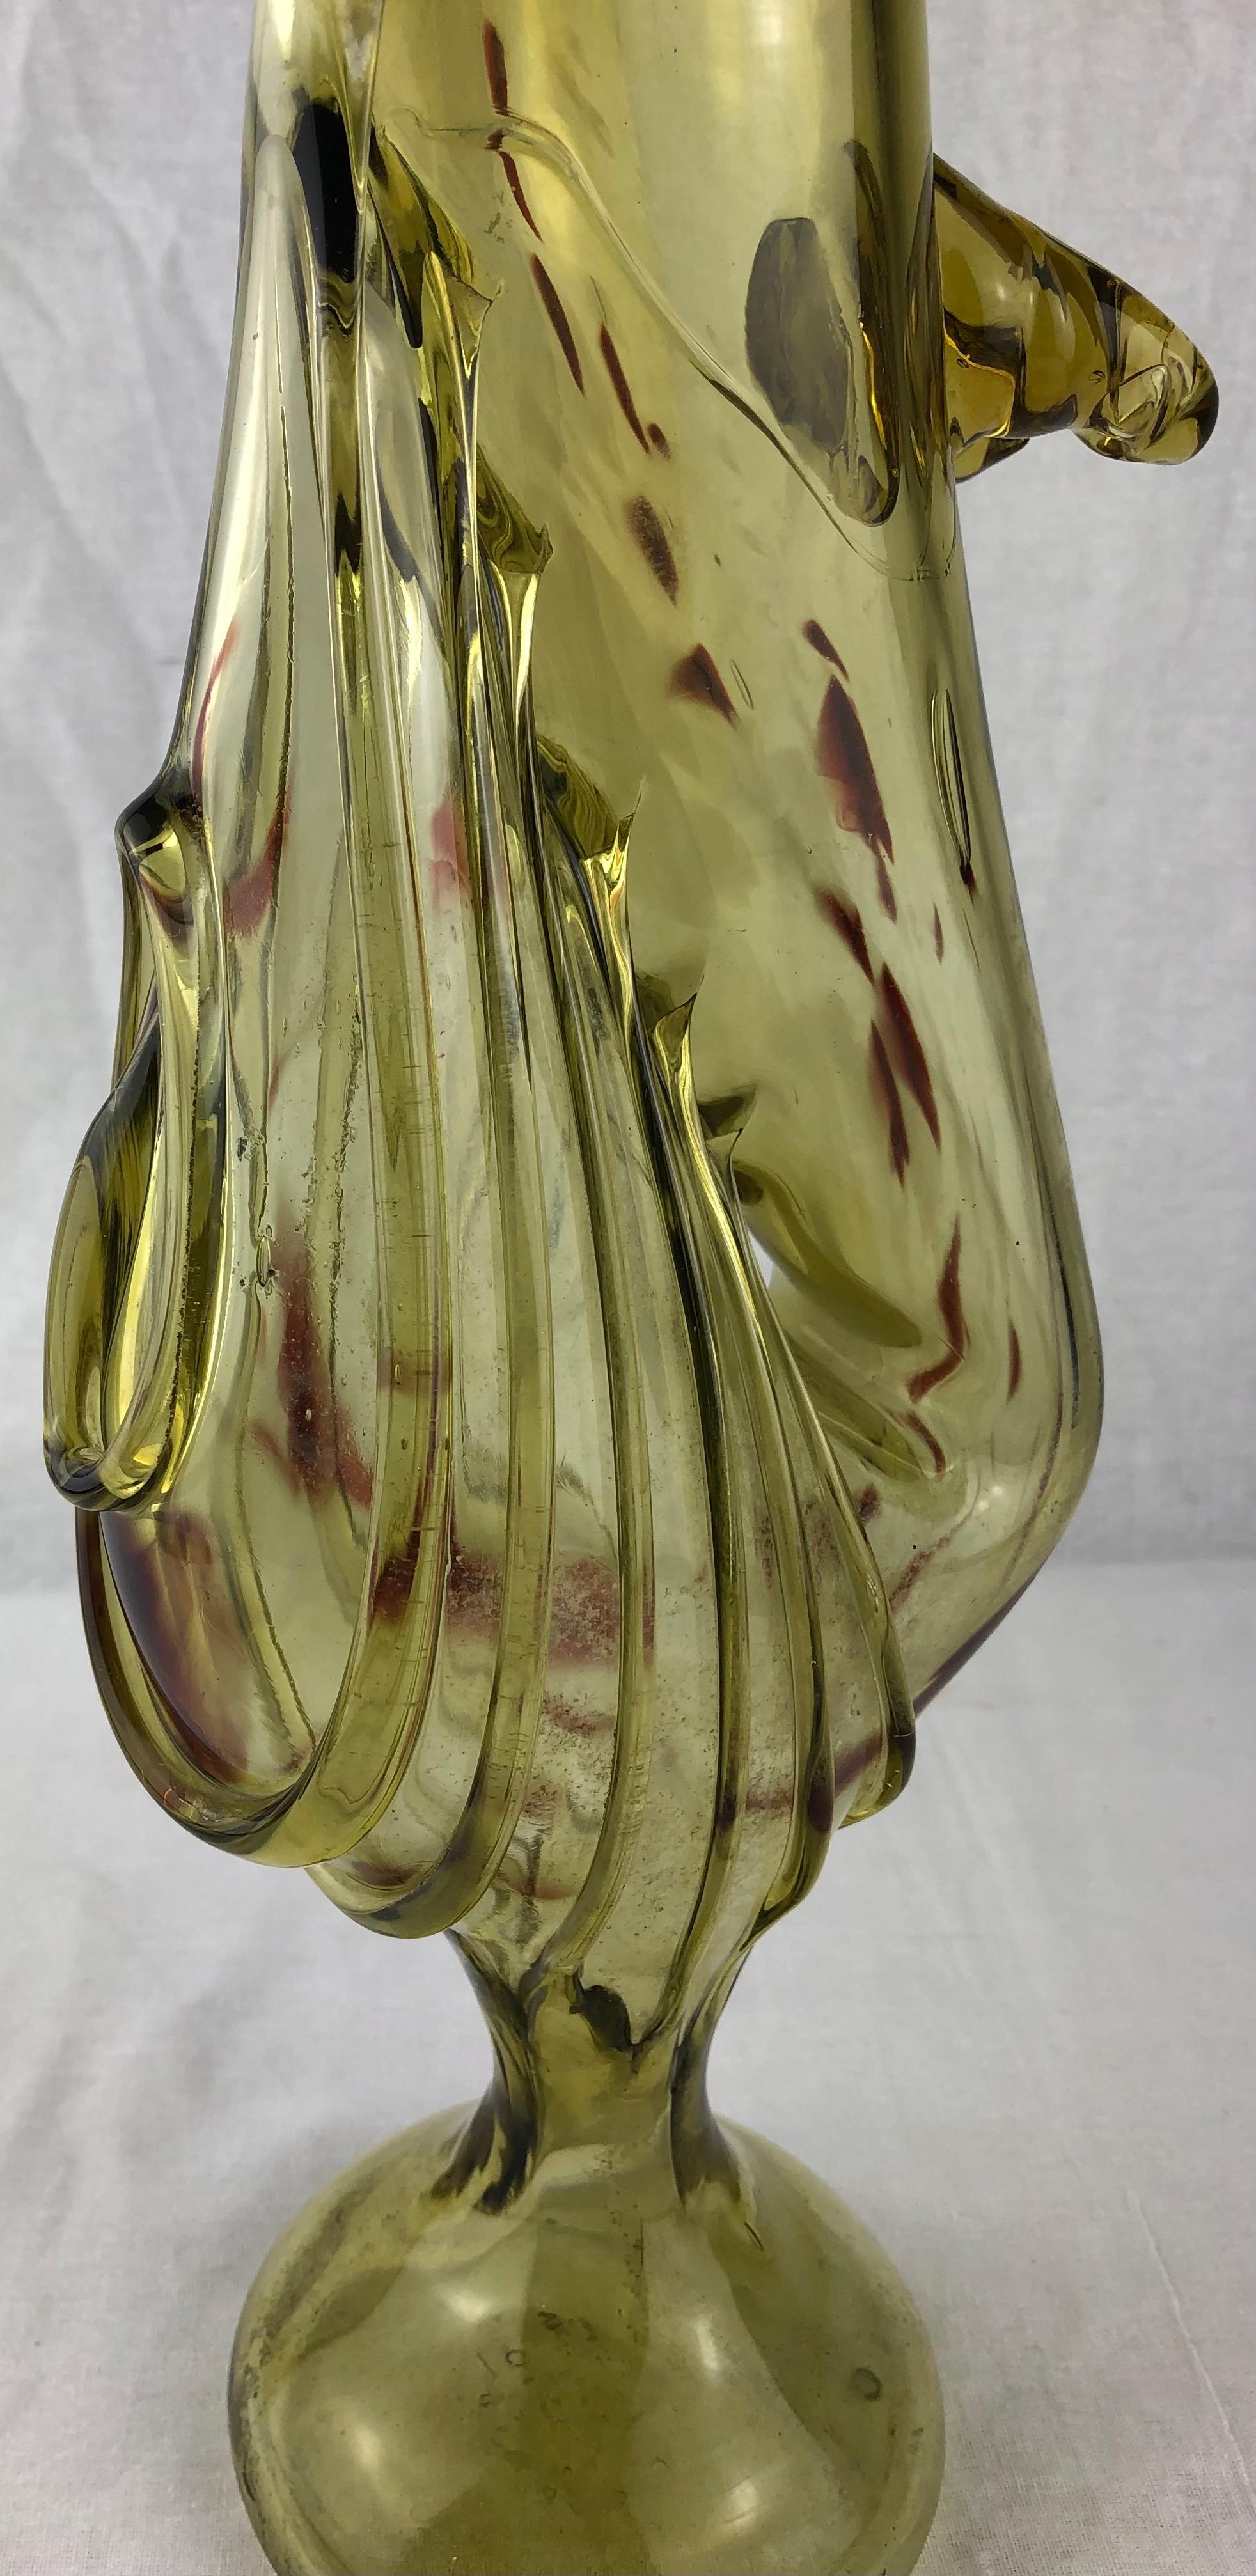 Tan France Auktion Pick

Murano Kunstglas Blumenvase in einer schönen ungewöhnlichen Form. Diese hübsche, handgefertigte Vase eignet sich perfekt, um Ihre Lieblingsblumen zu präsentieren.

Er wertet jeden Tisch, jedes Regal und jede Arbeitsplatte